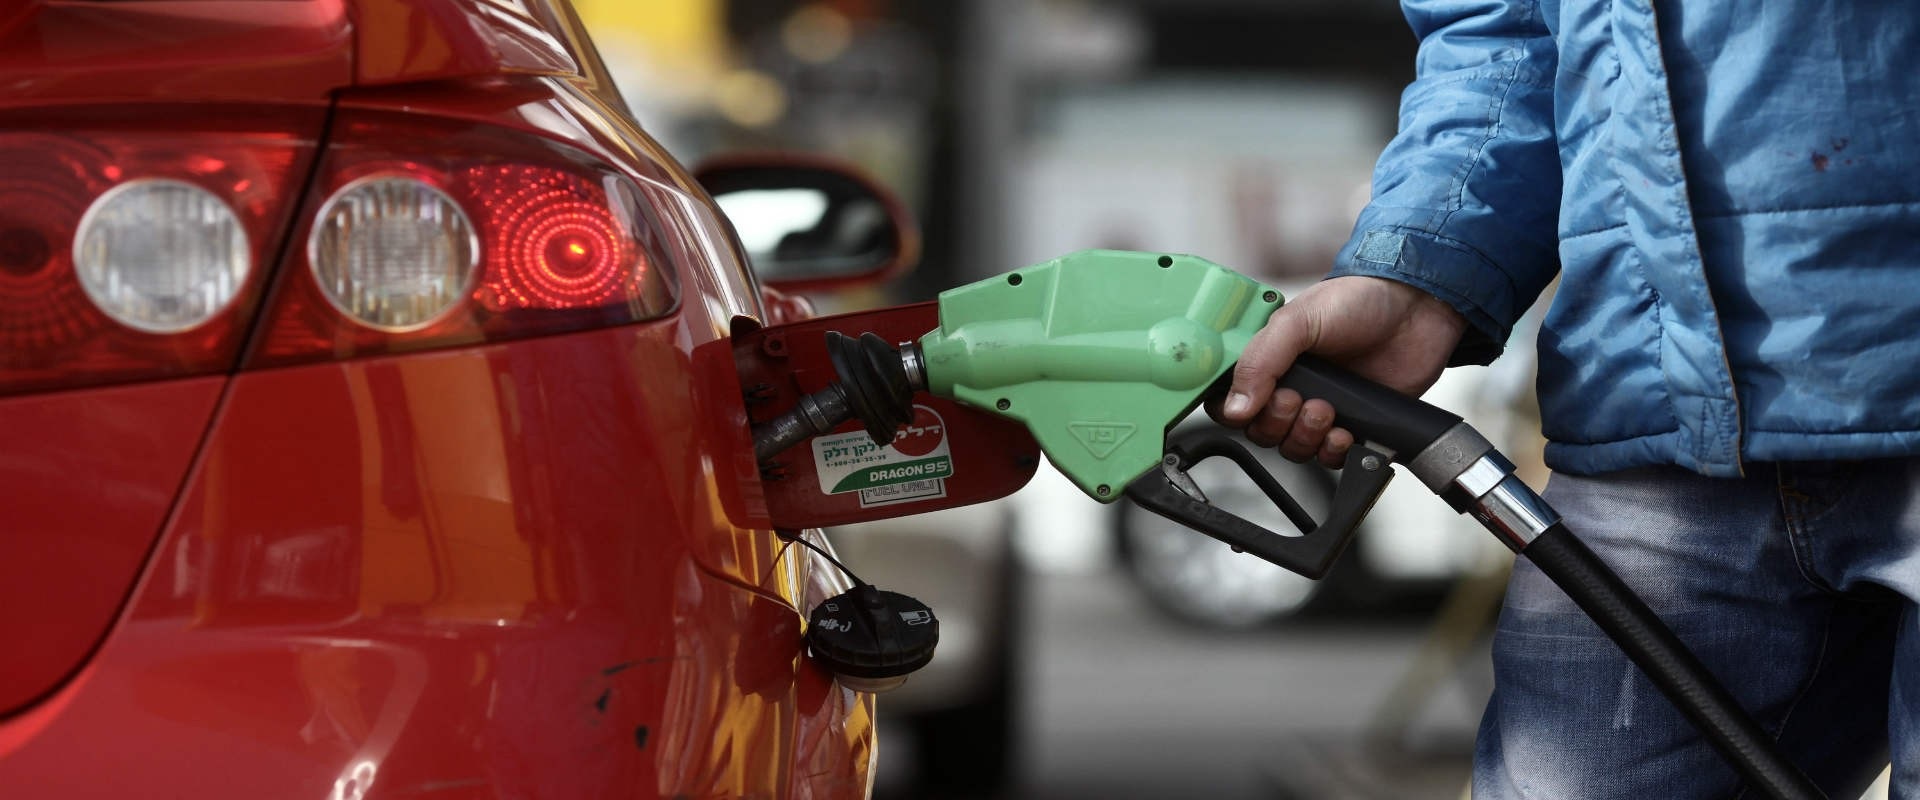 سعر البترول لشهر اغسطس في السعودية 2022